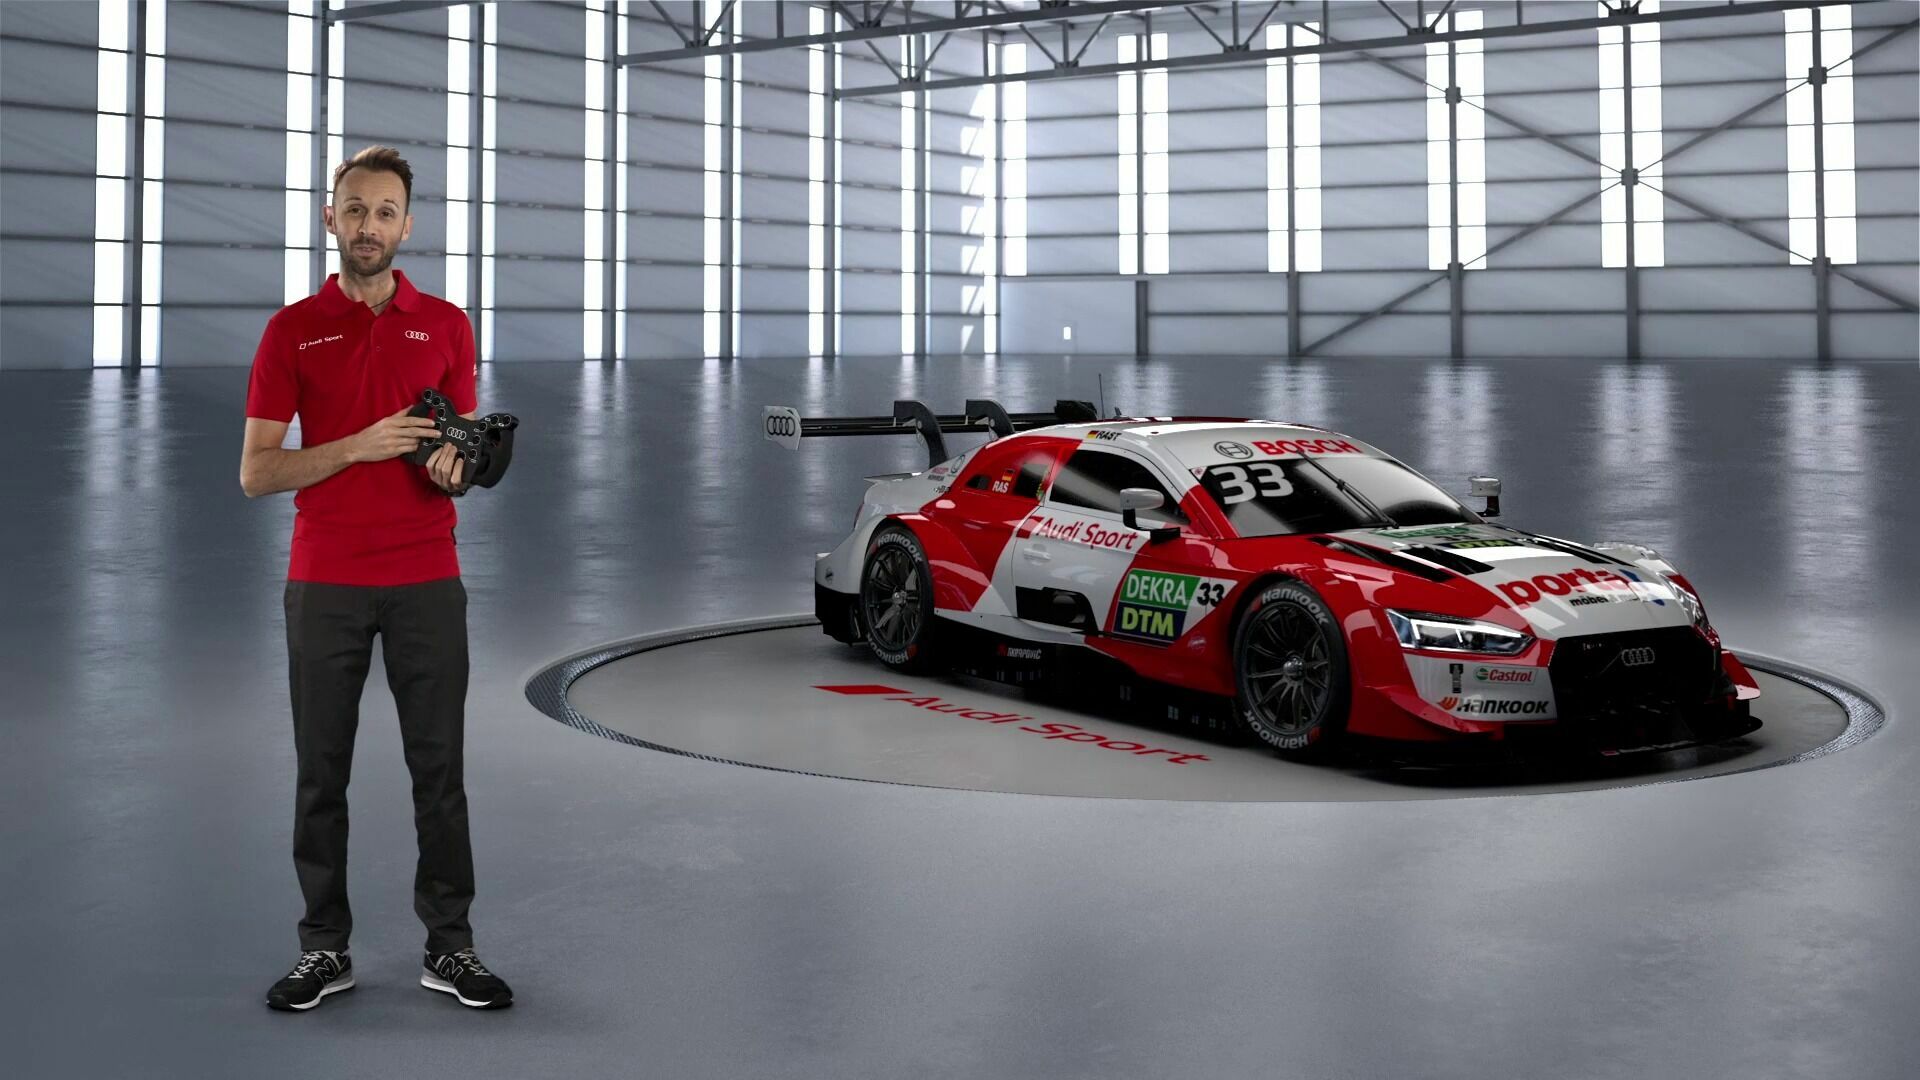 DTM: Champion car's new design for 2020 season